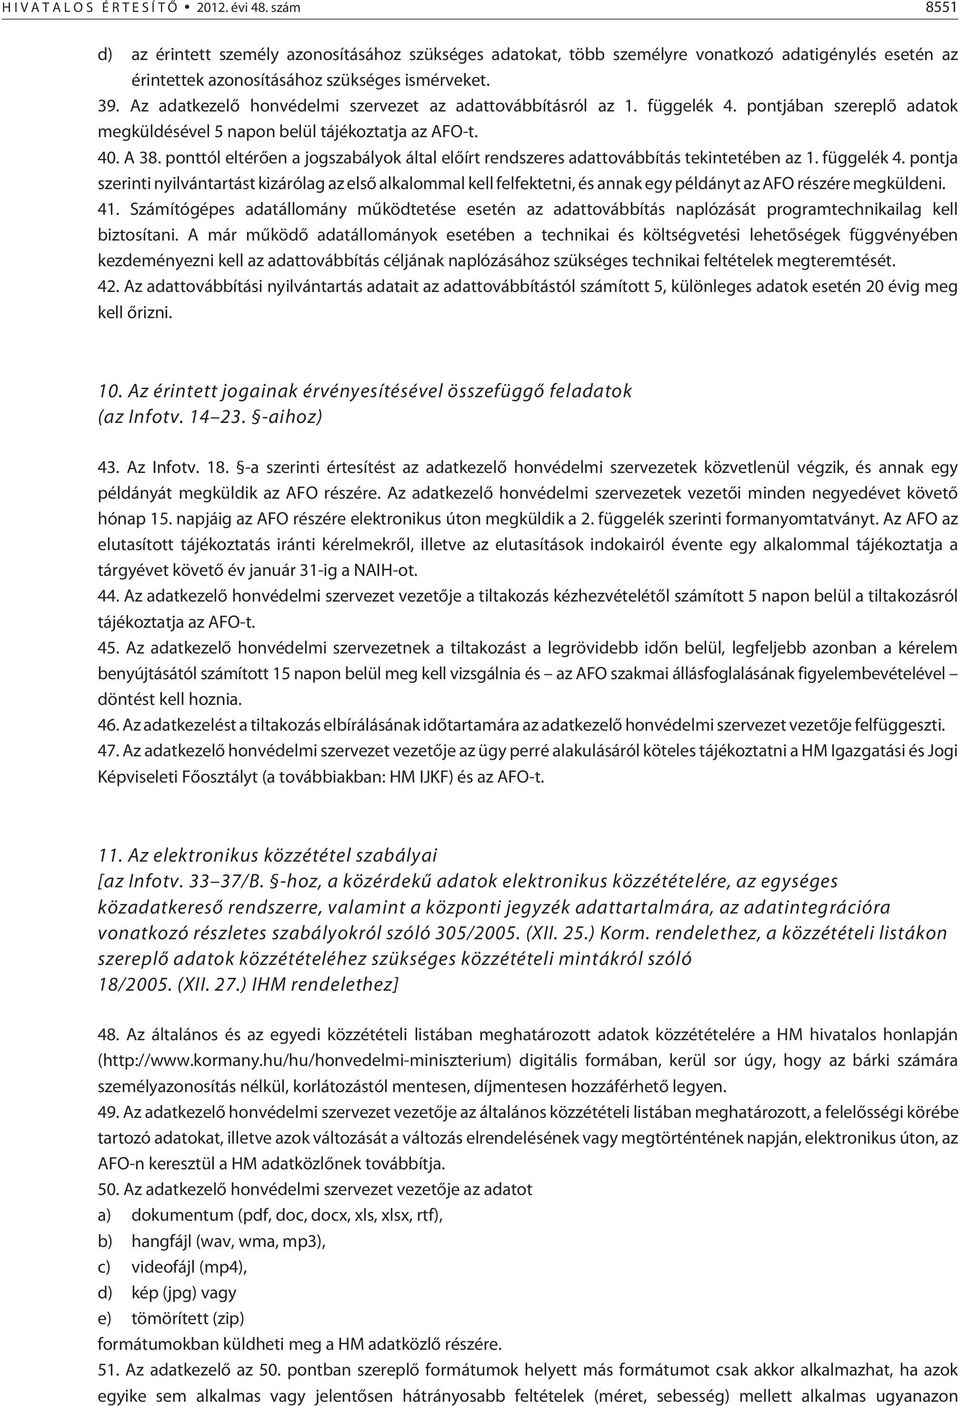 Az adatkezelõ honvédelmi szervezet az adattovábbításról az 1. függelék 4. pontjában szereplõ adatok megküldésével 5 napon belül tájékoztatja az AFO-t. 40. A 38.